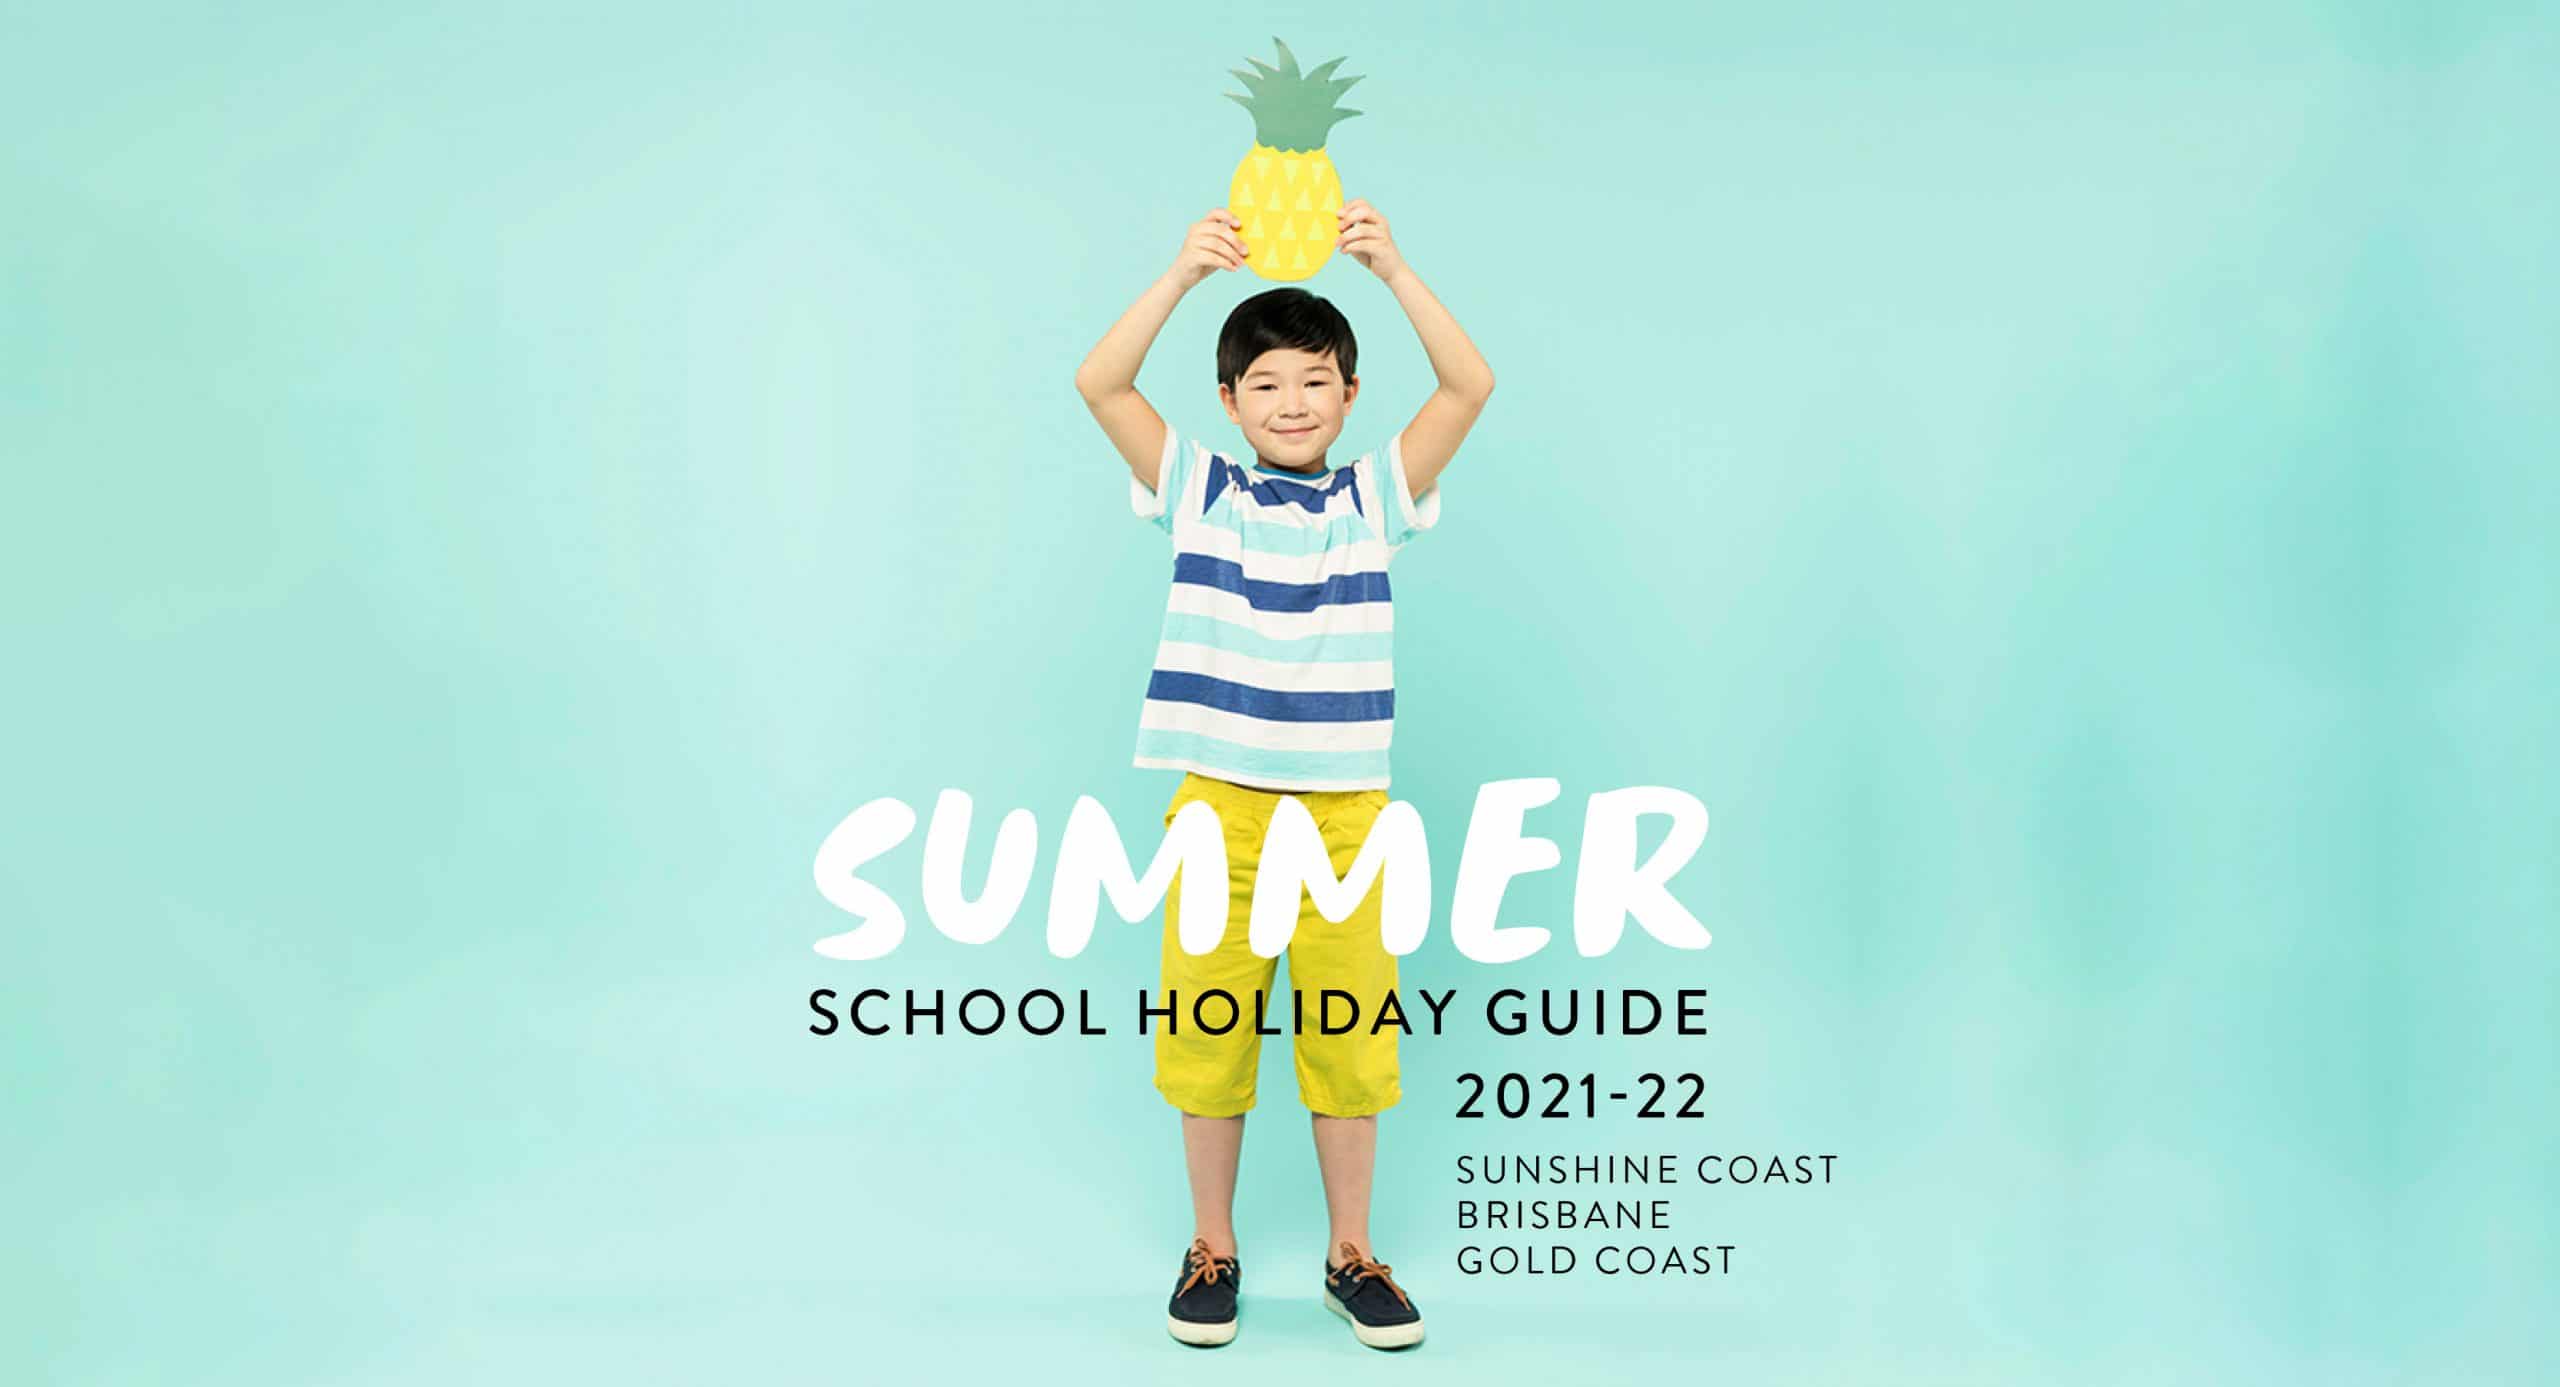 Summer school holiday activities 2021-22 in Queensland